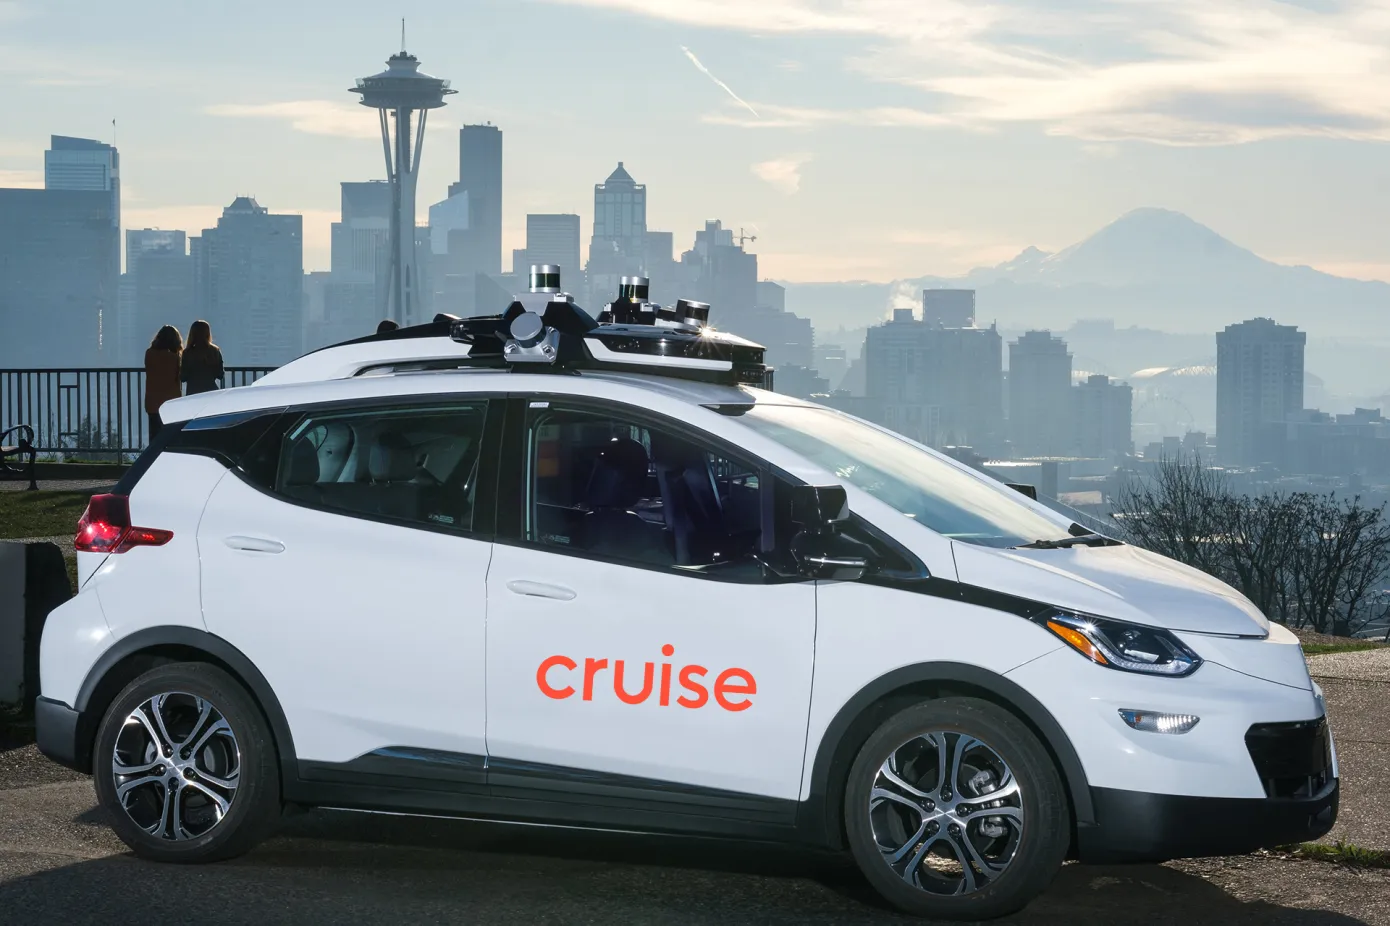 Cruise planuje wprowadzić usługę robotaxi w Seattle i Waszyngtonie